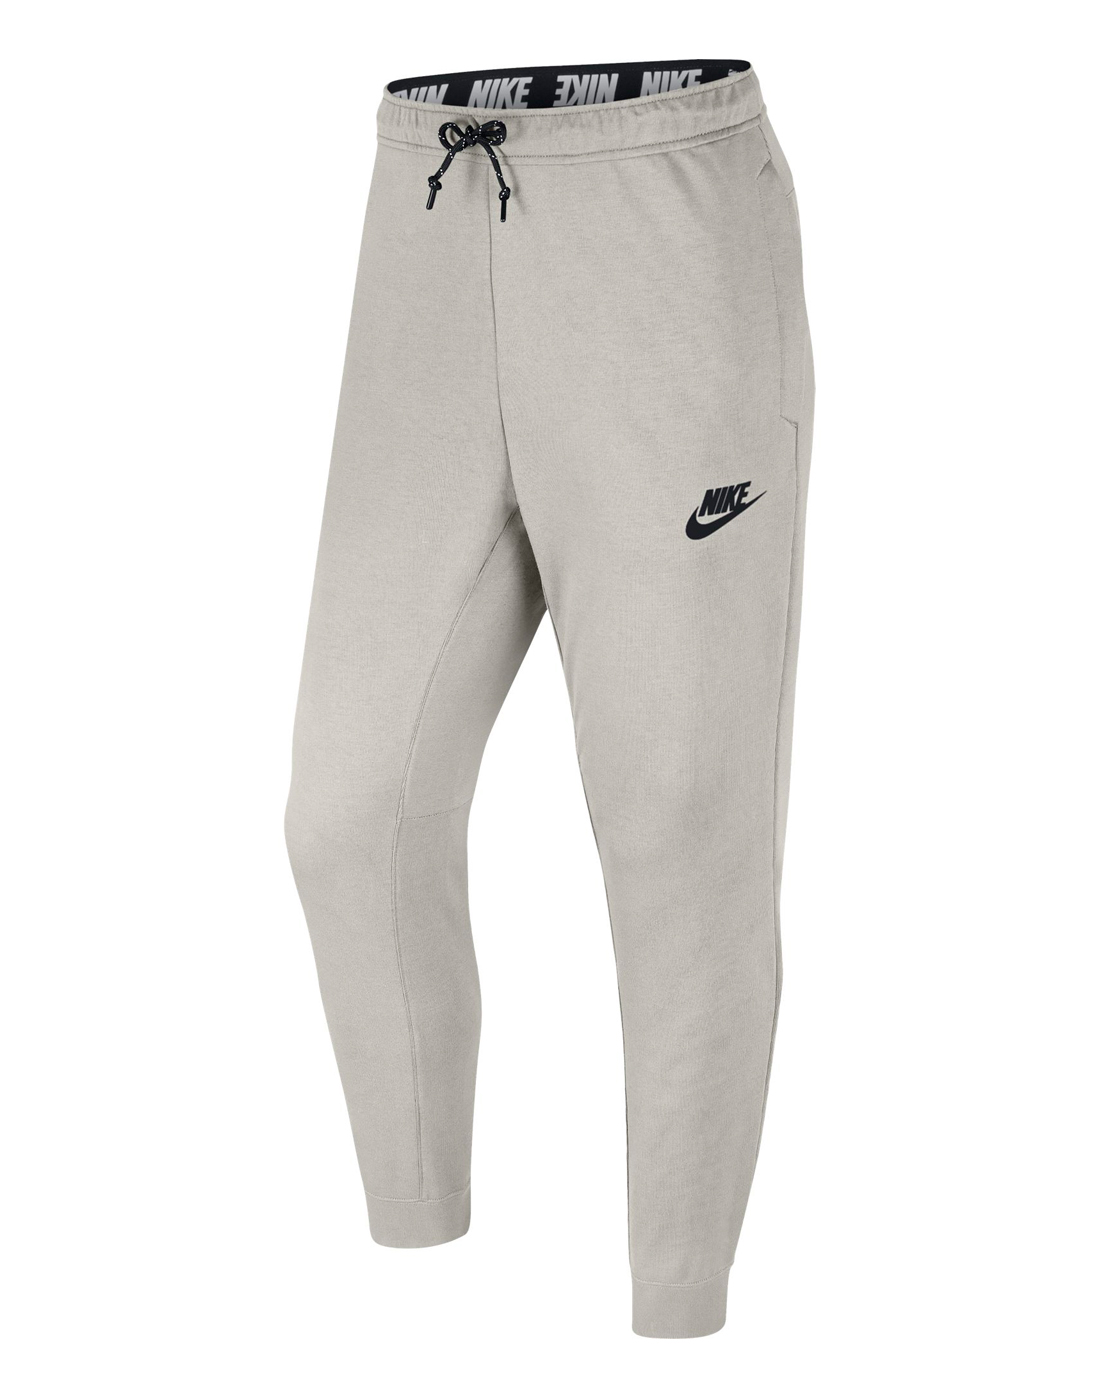 Nike Mens AV15 Jogger | Cream | Life Style Sports